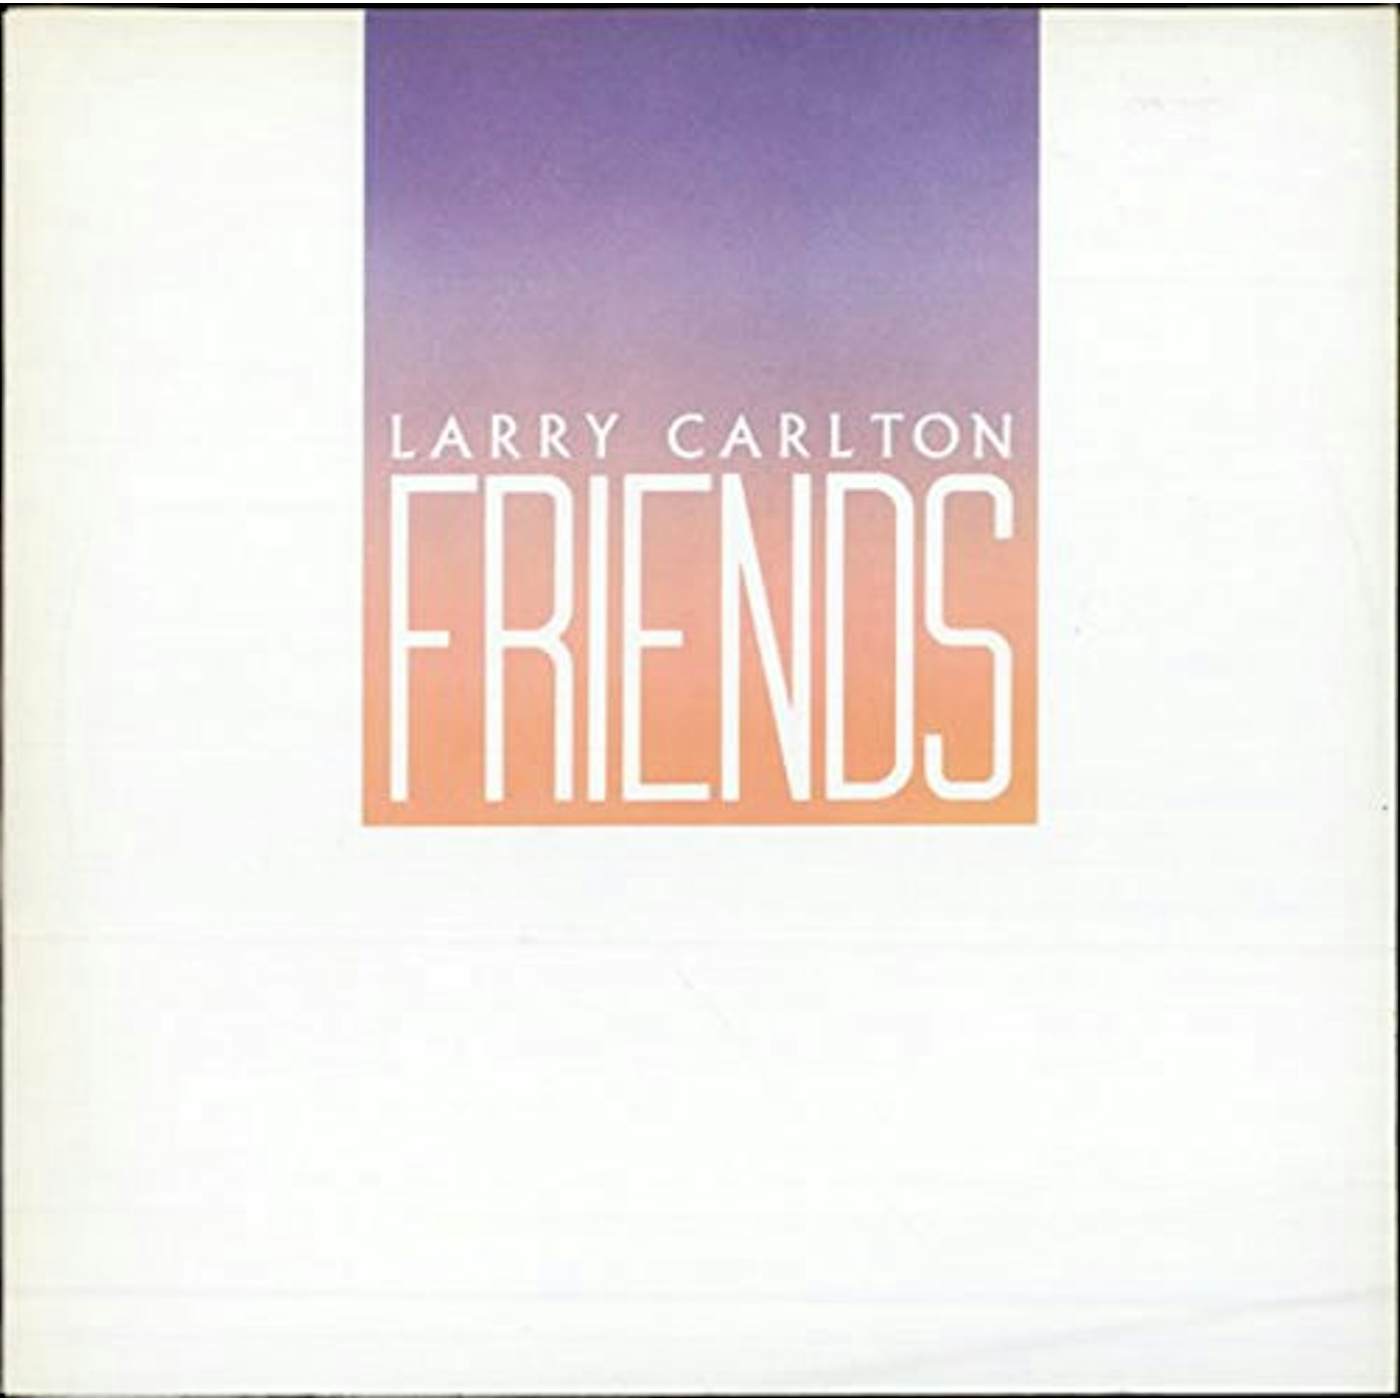 Larry Carlton FRIENDS CD